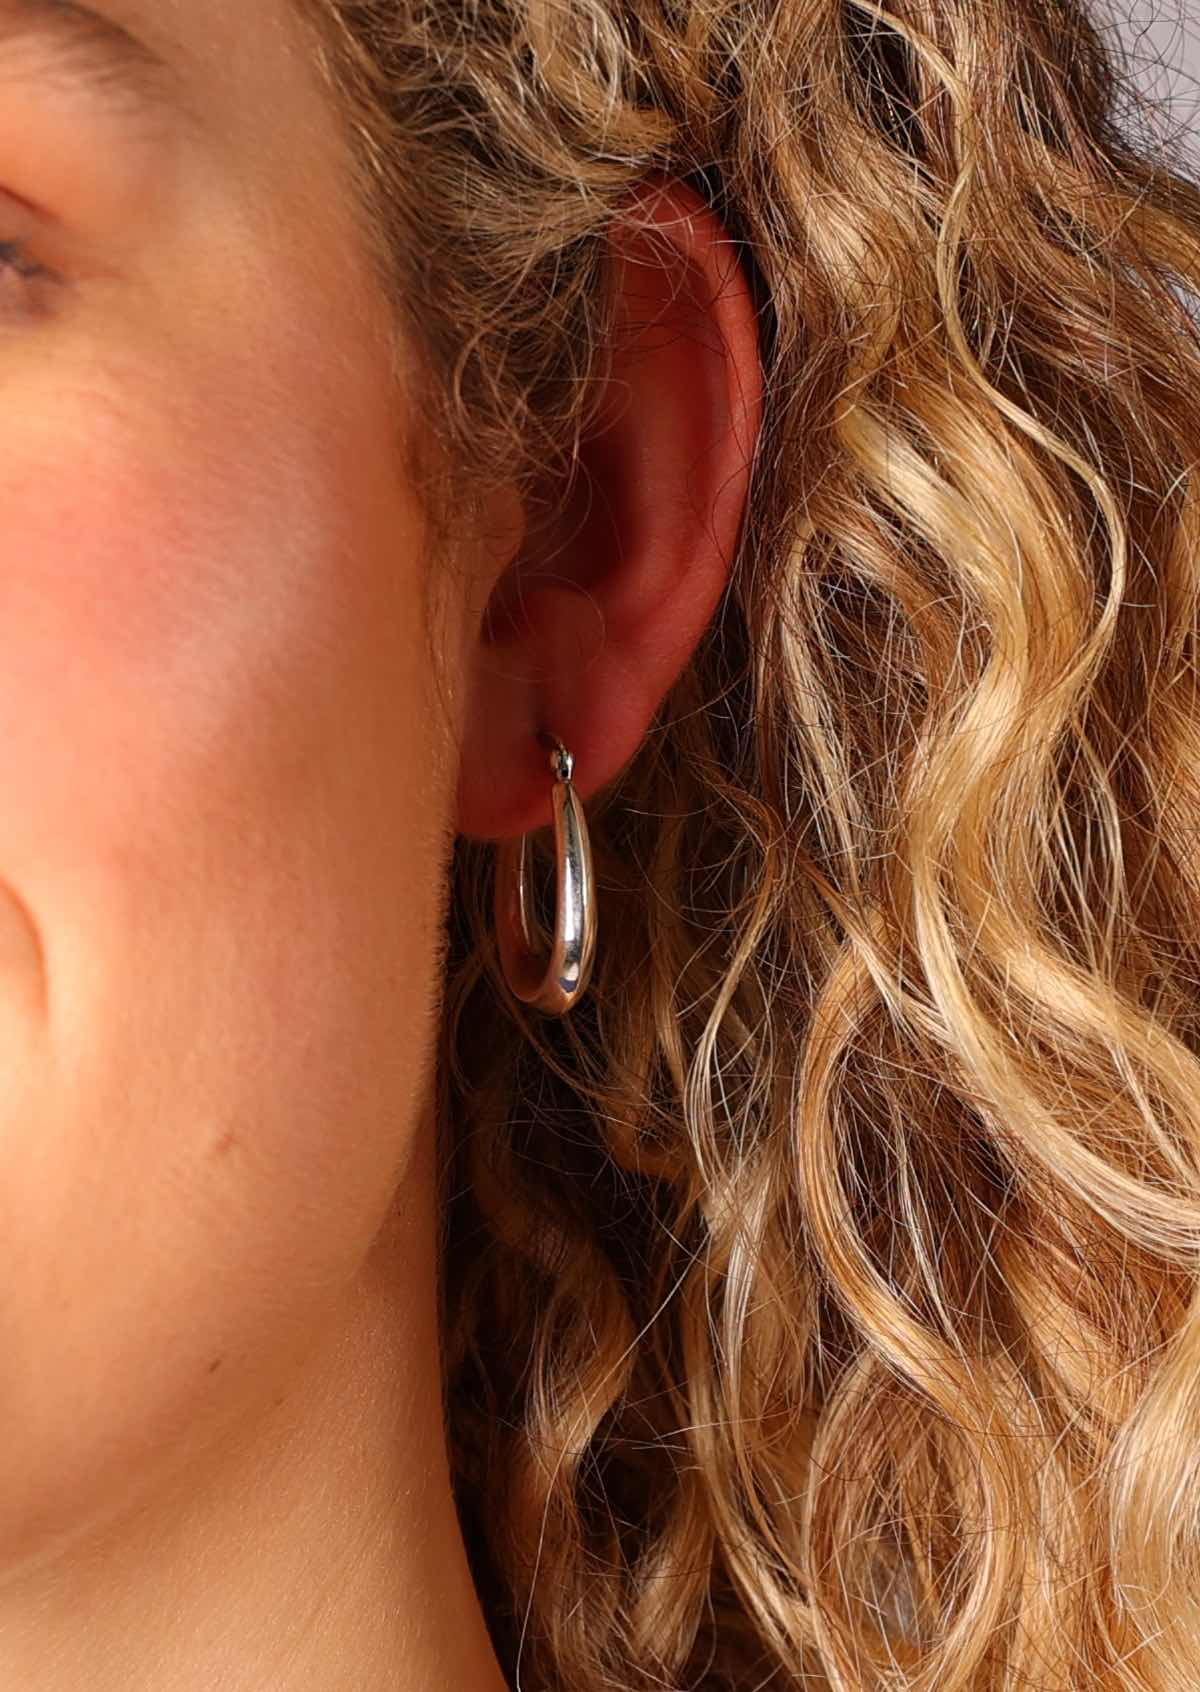 A great pair of everyday silver hoop earrings